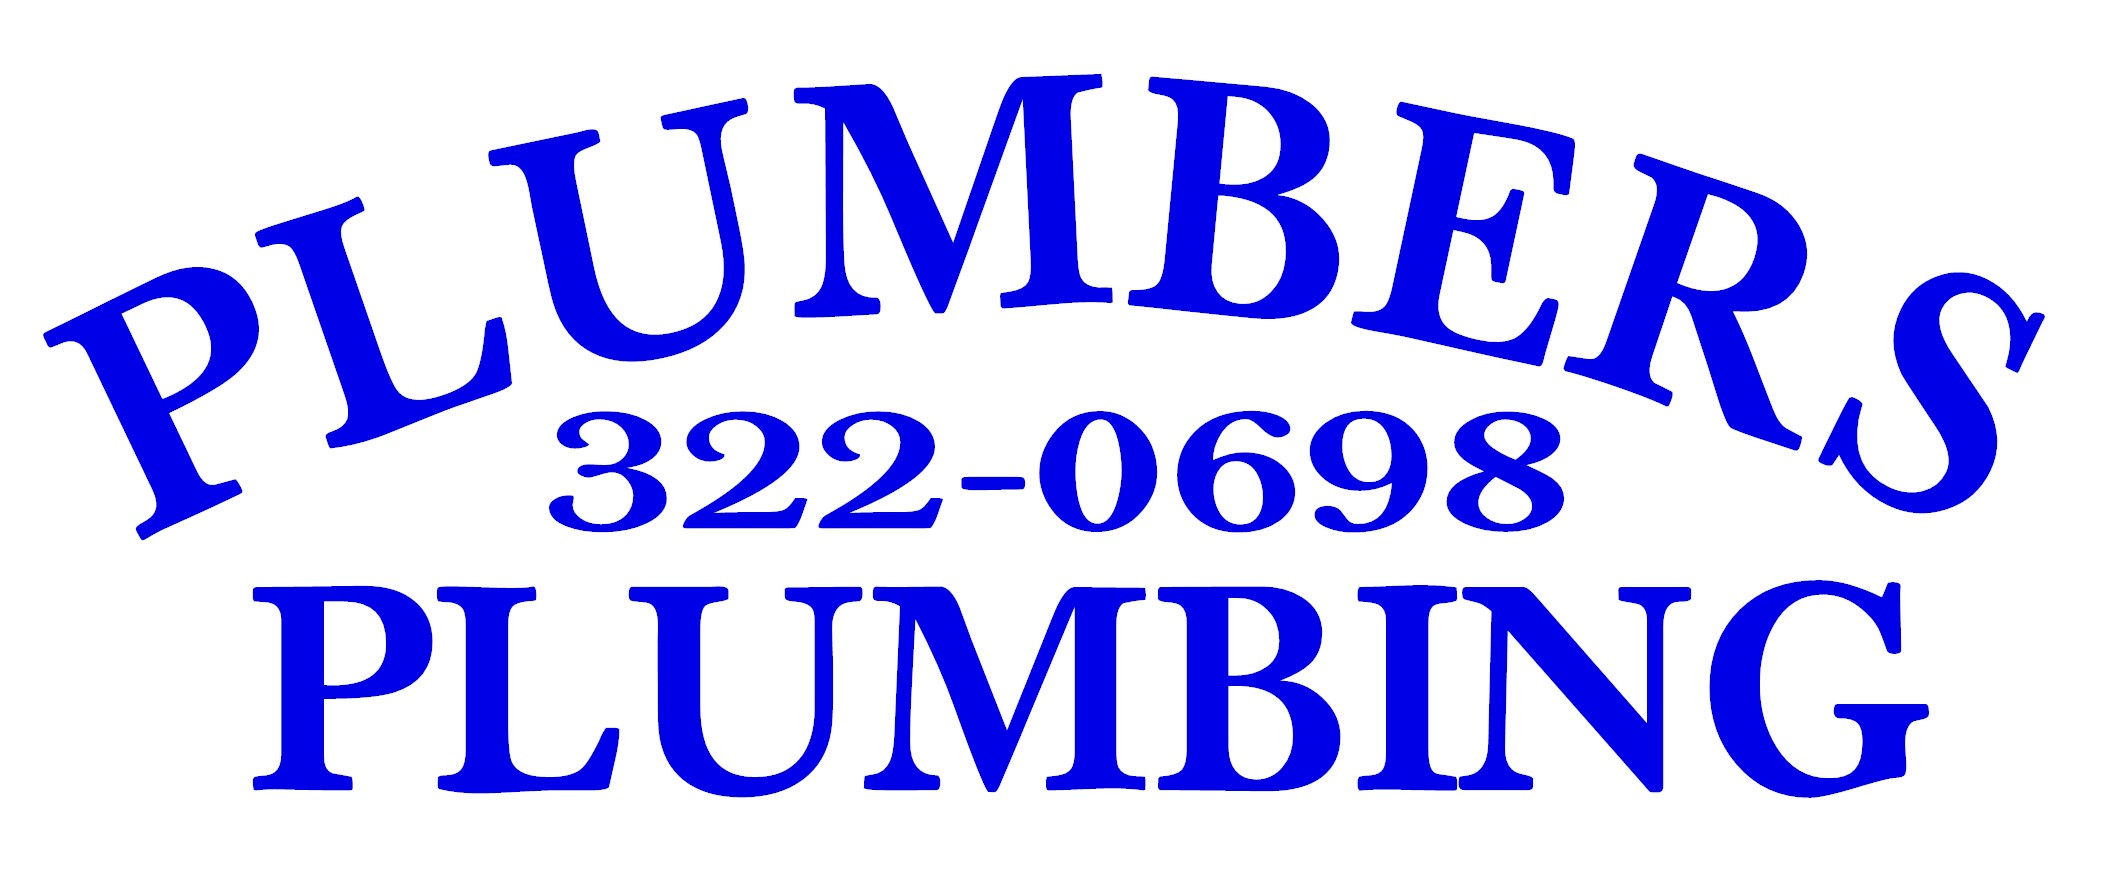 Plumbers Plumbing Logo